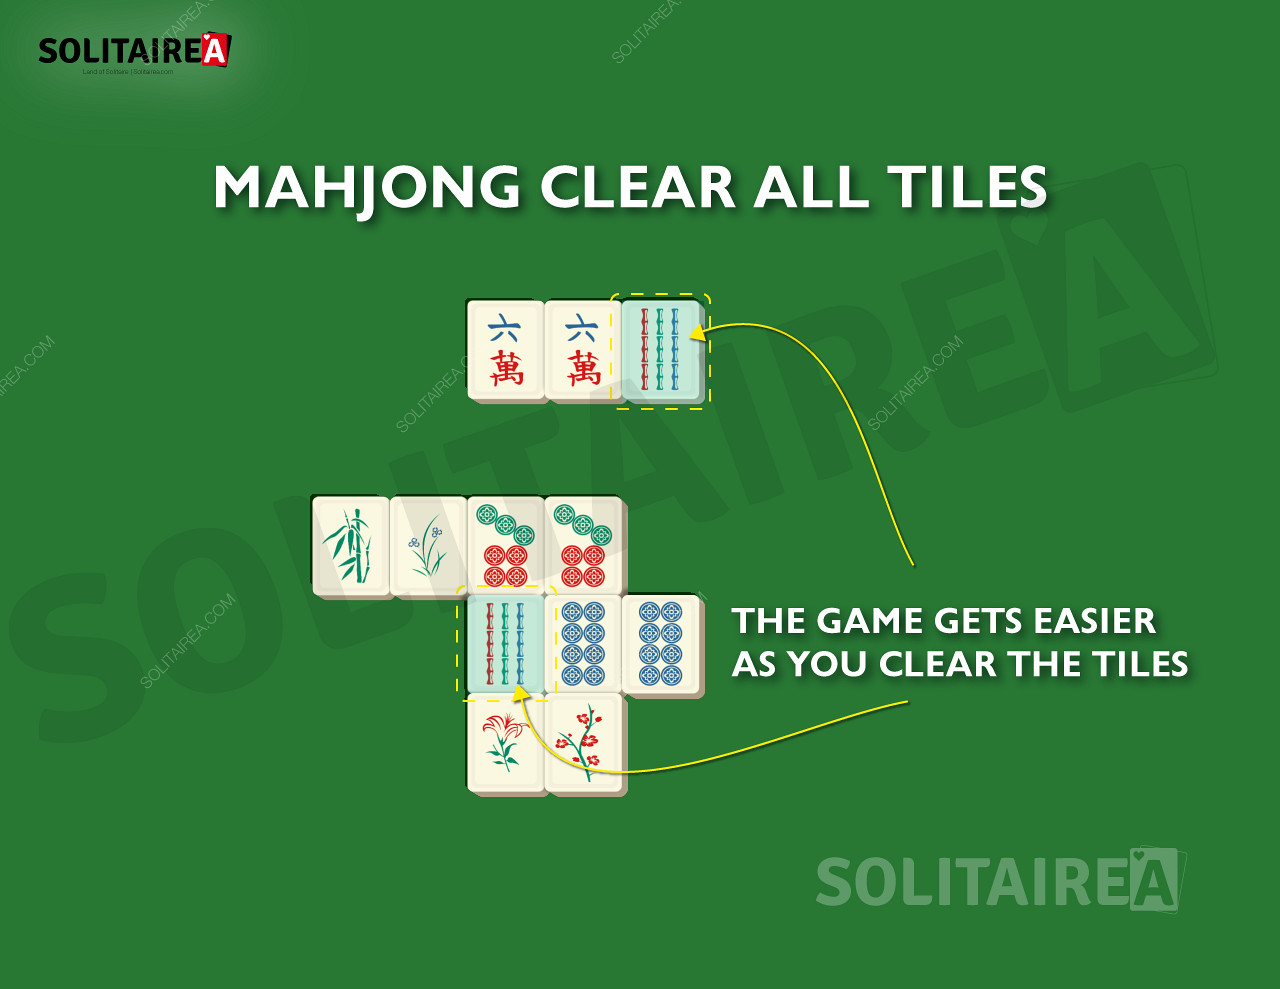 Ako postupujete, v hre Mahjong Solitaire zostáva menej dlaždíc na vyčistenie.